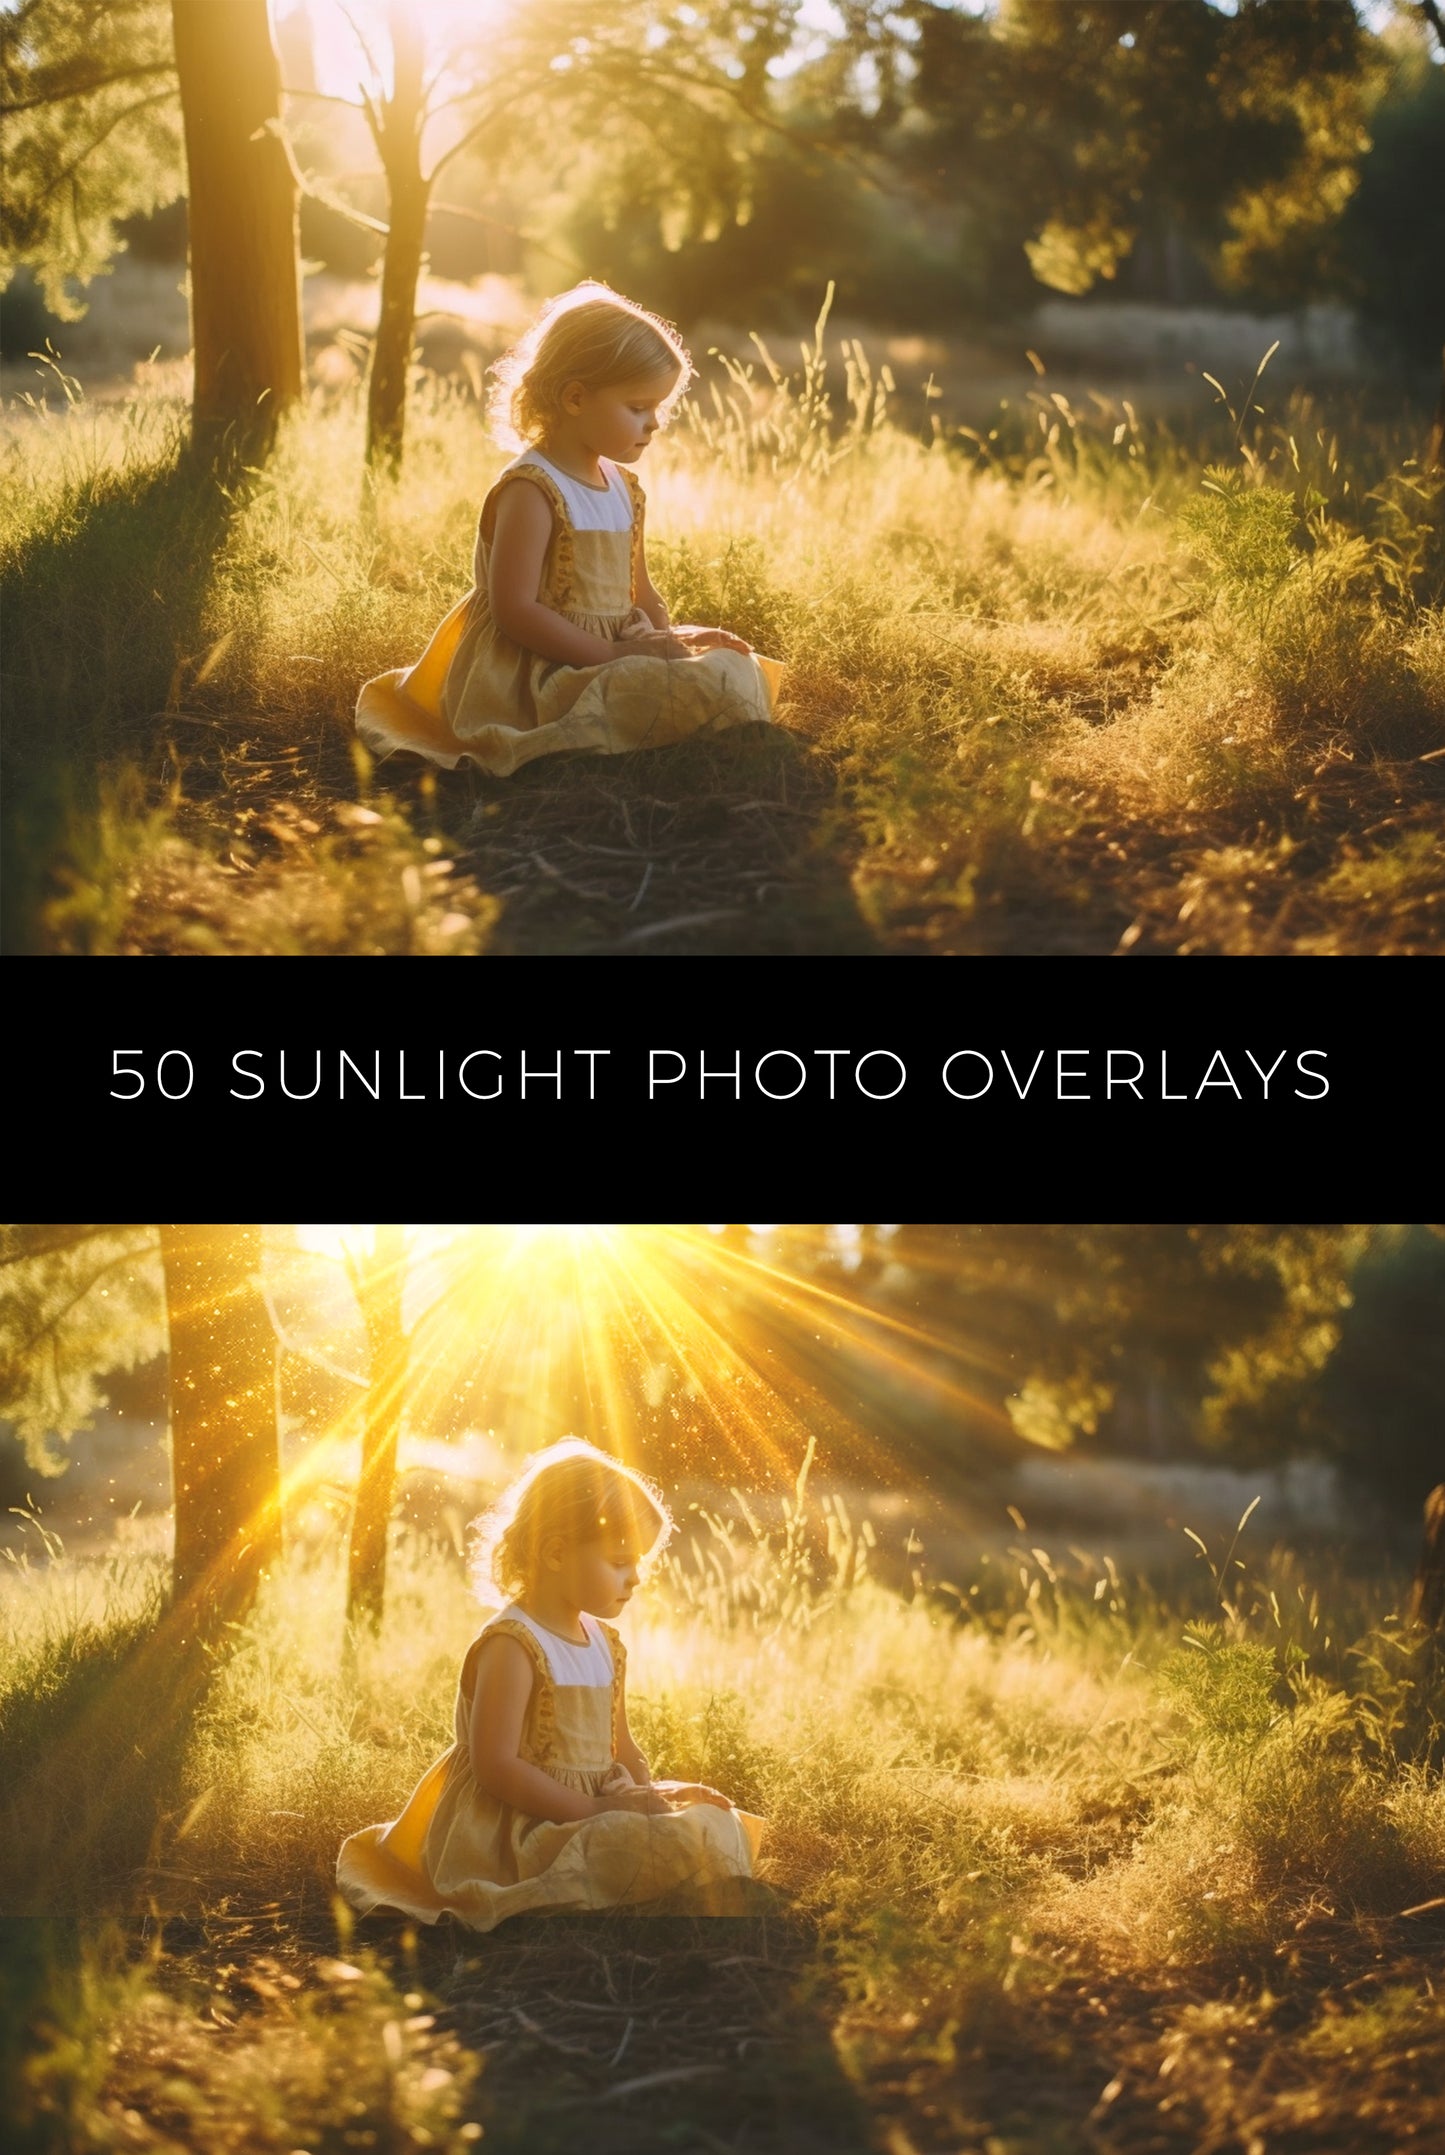 50 Sunlight Photo Overlays